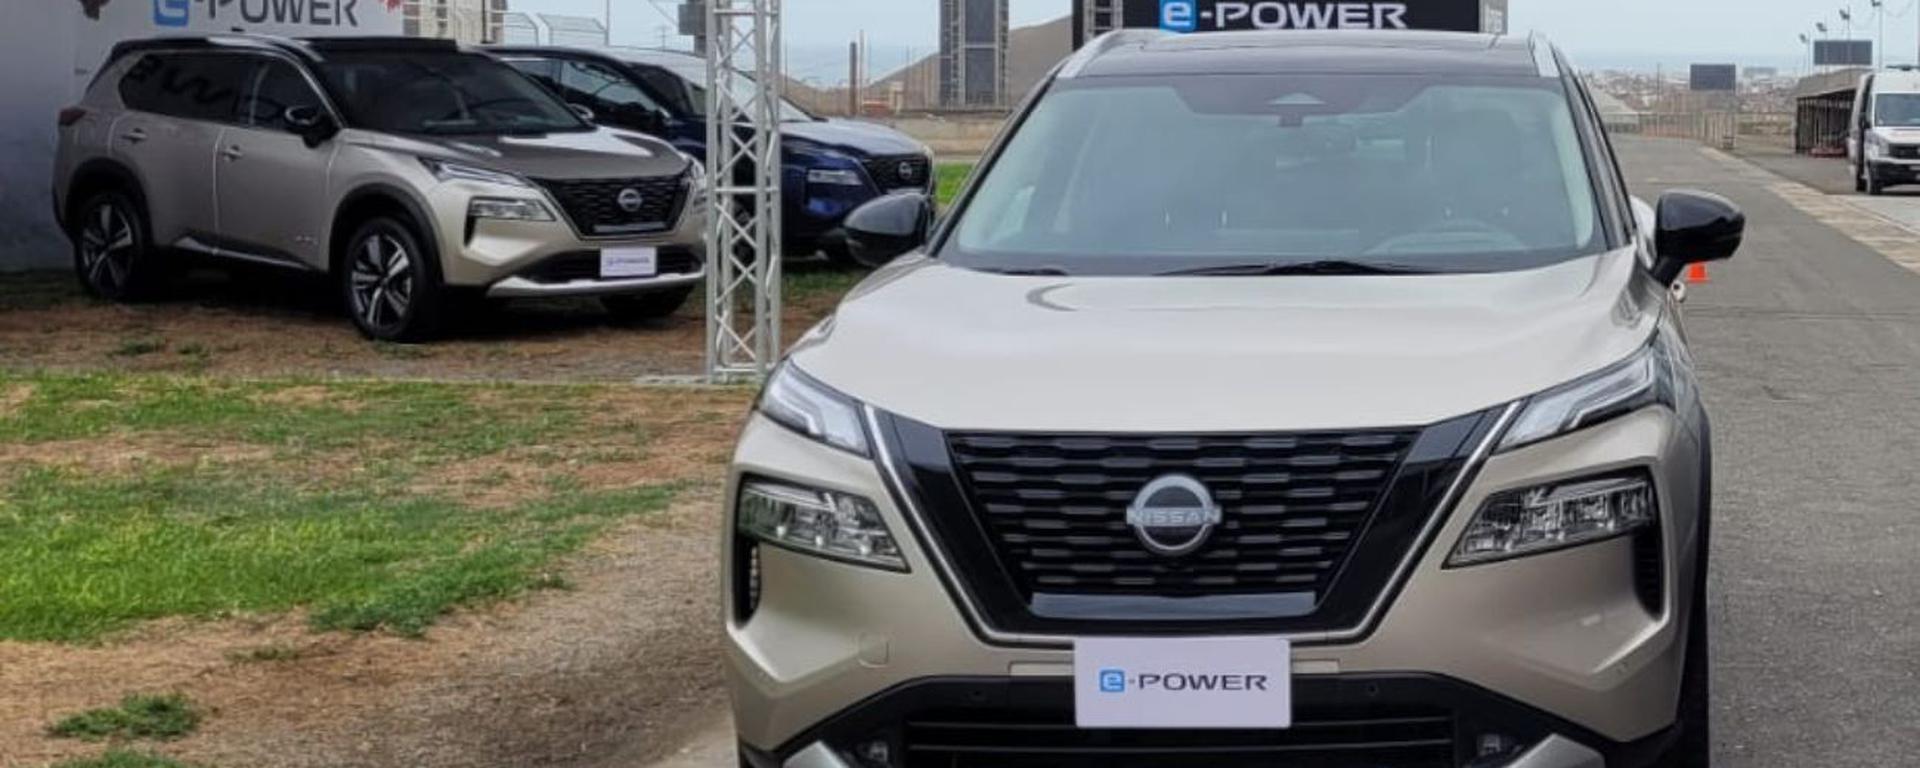 Nissan presenta en el Perú su X-Trail e-Power, el SUV “eléctrico” que no necesita enchufes y rinde hasta 950 kilómetros 